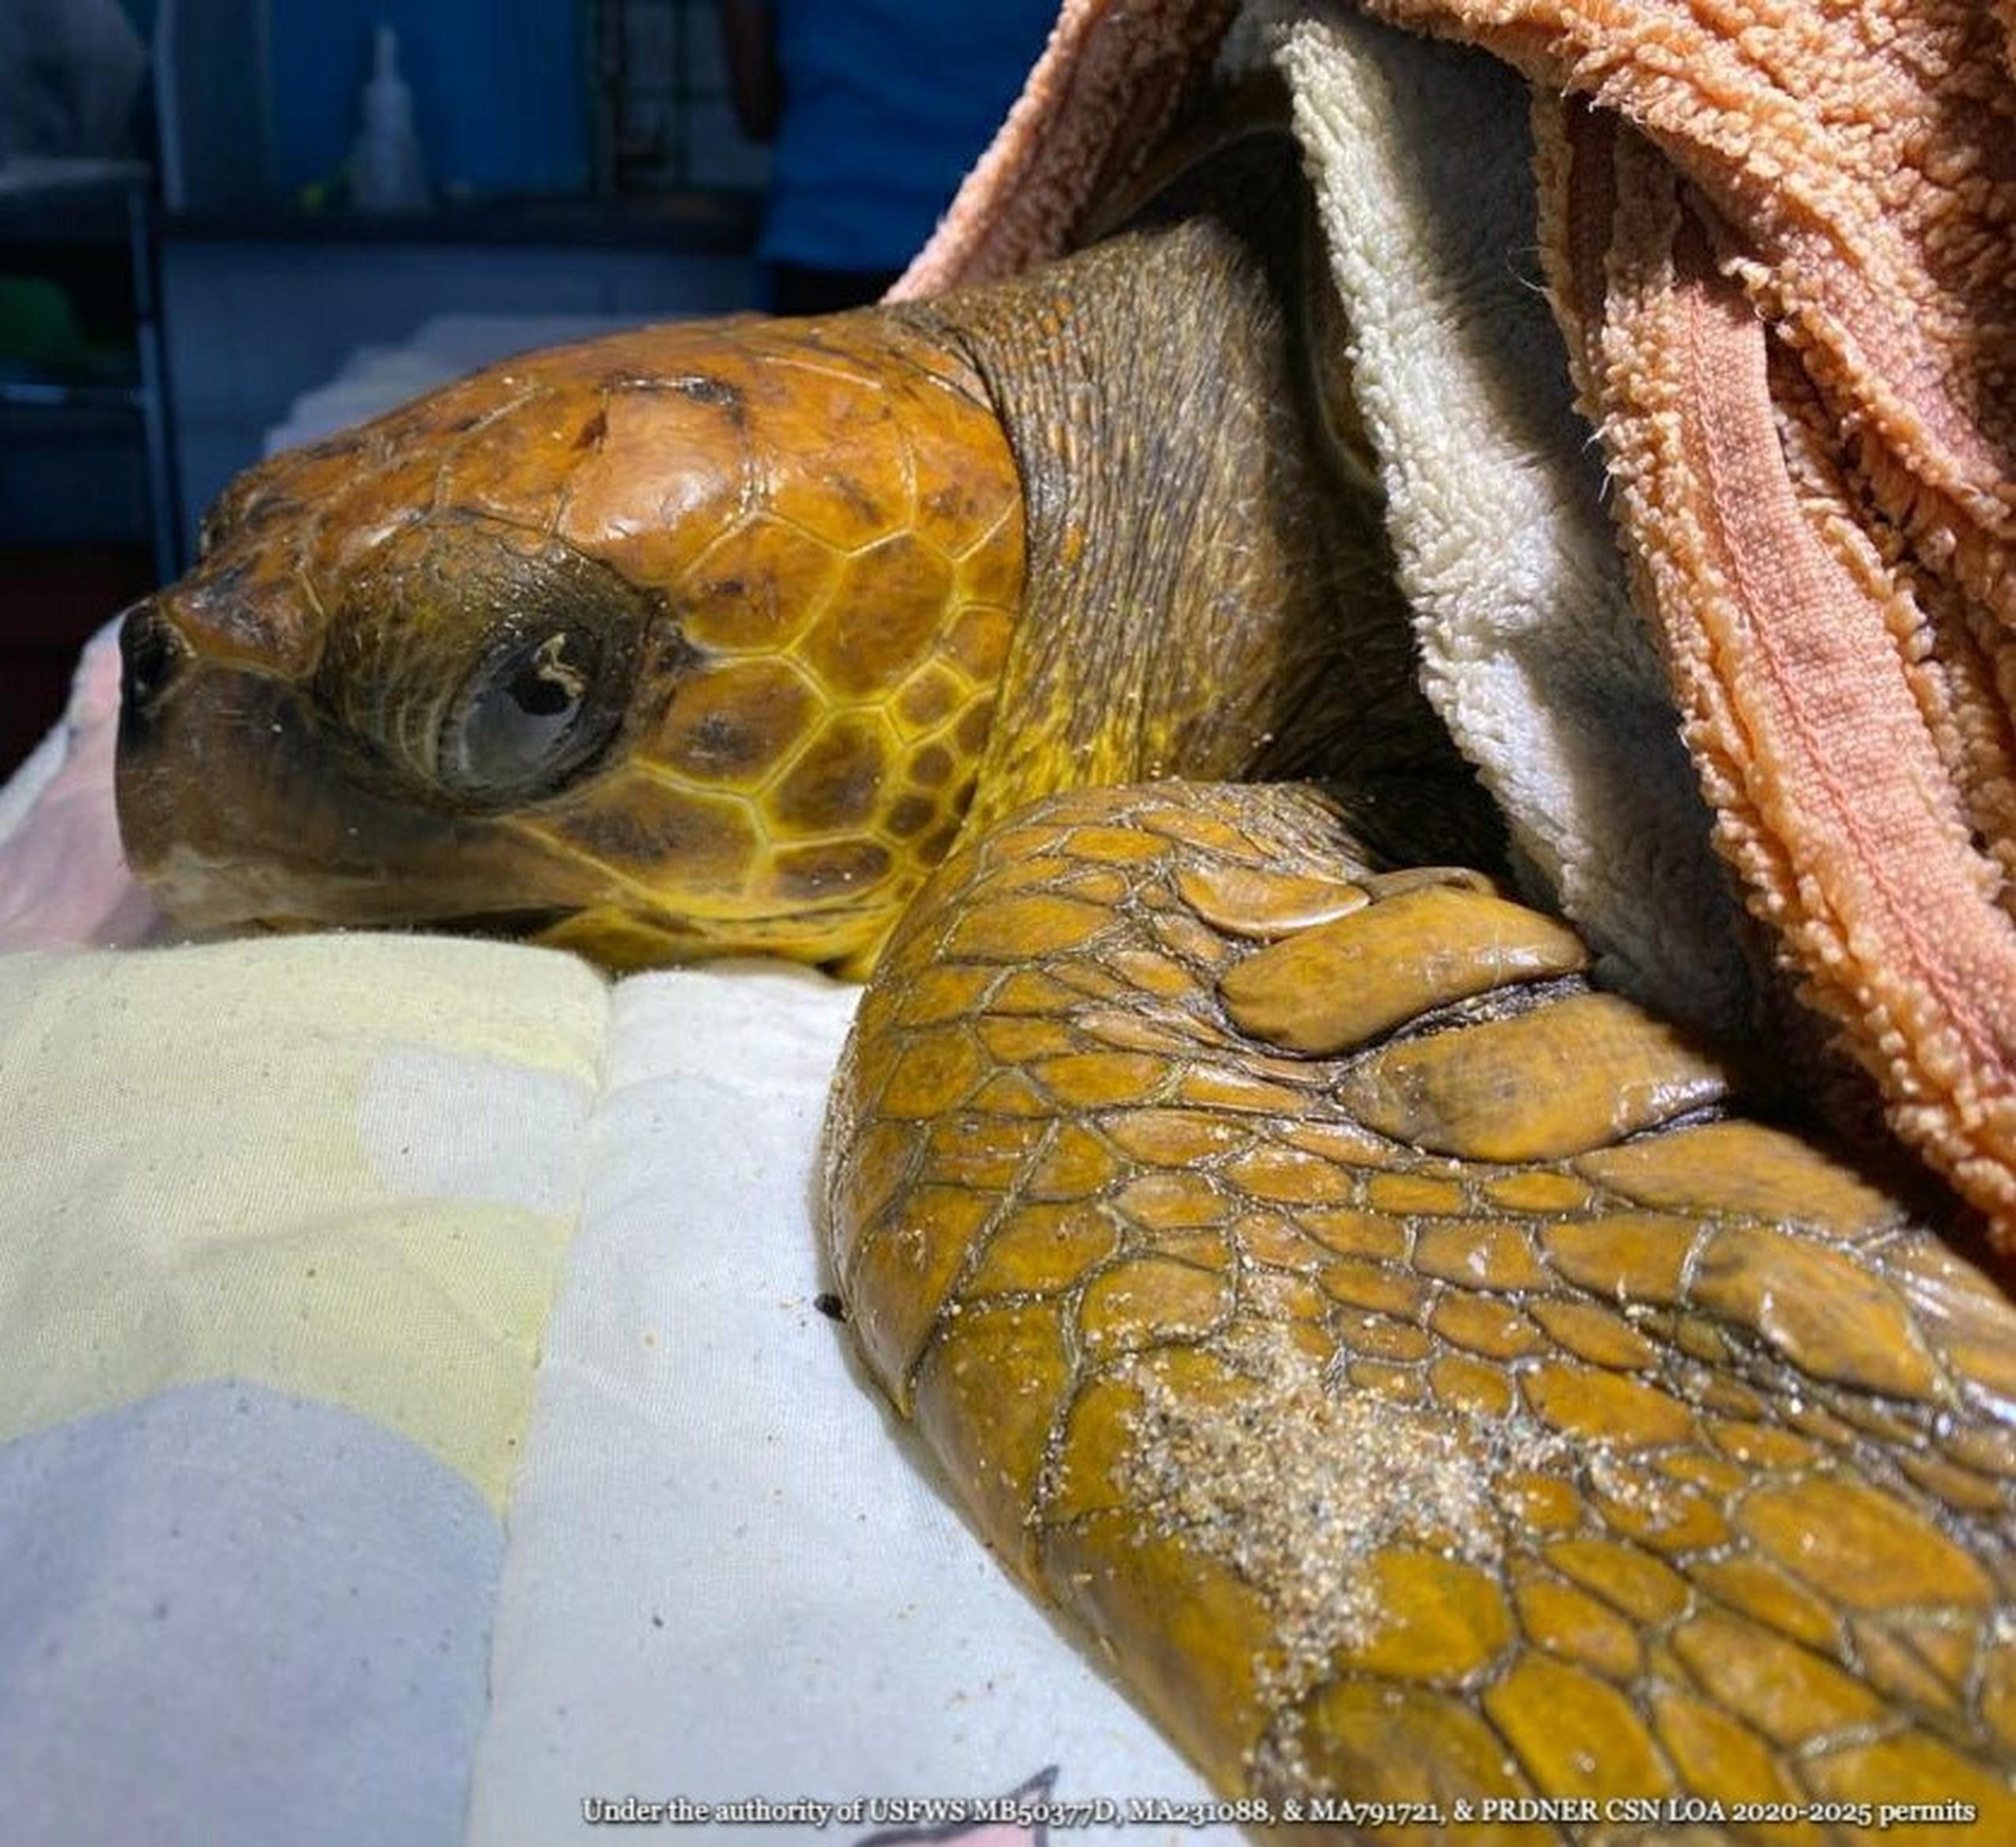 Si desea ayudar en el cuidado veterinario de la tortuga puede donar a través de ATH Móvil en "Pay a Business" bajo CentroDeManaties o a través de paypal en http://manatipr.org/donativos/ .